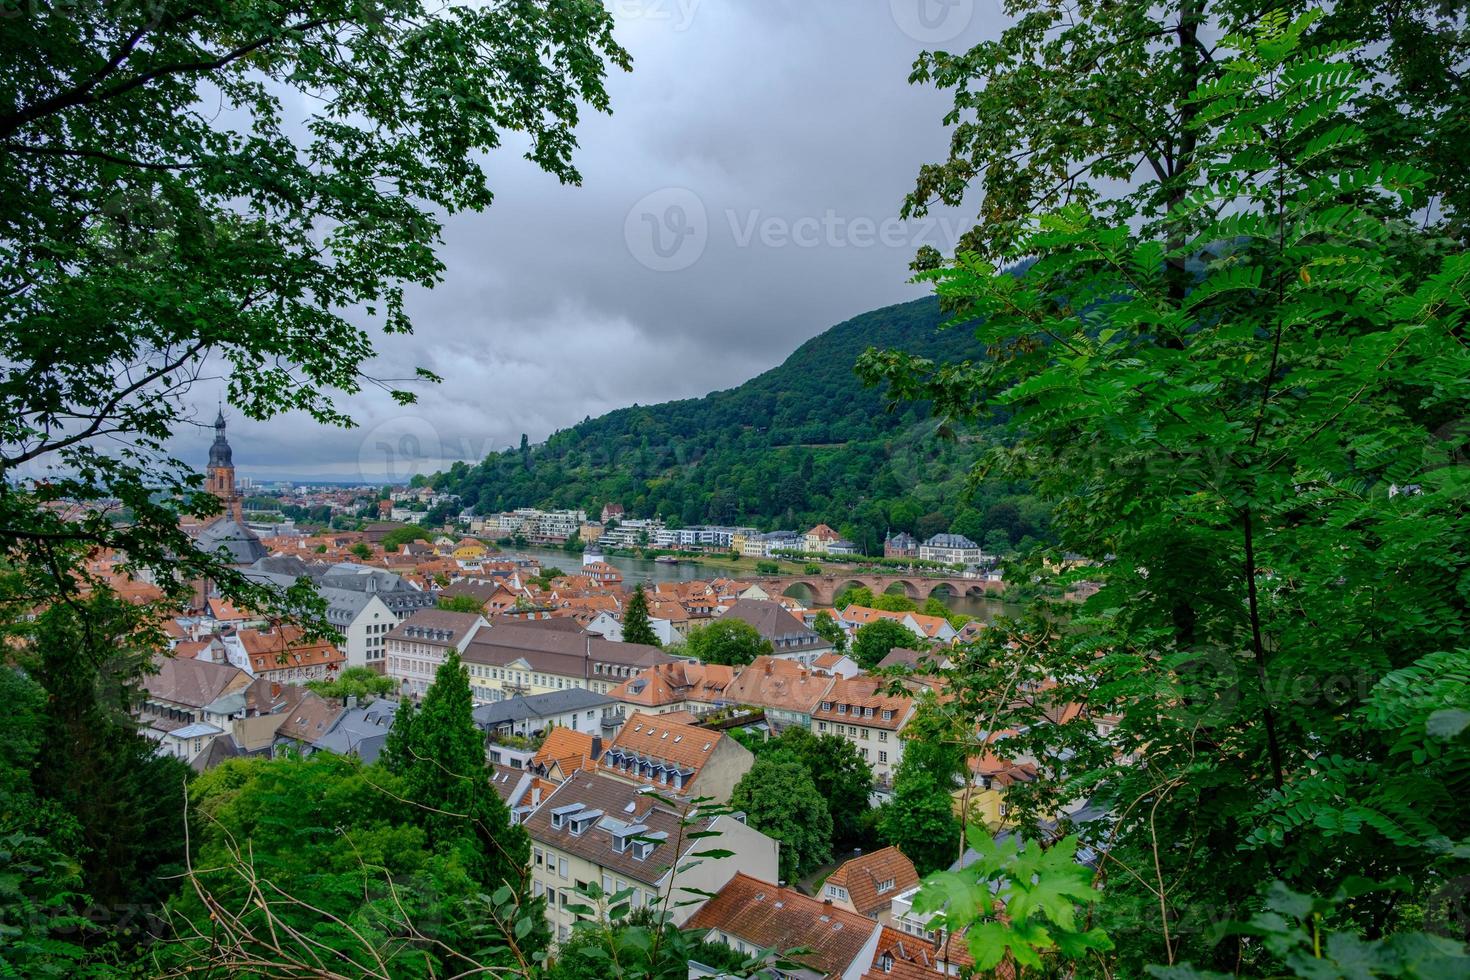 vista da bela cidade medieval de heidelberg, alemanha foto